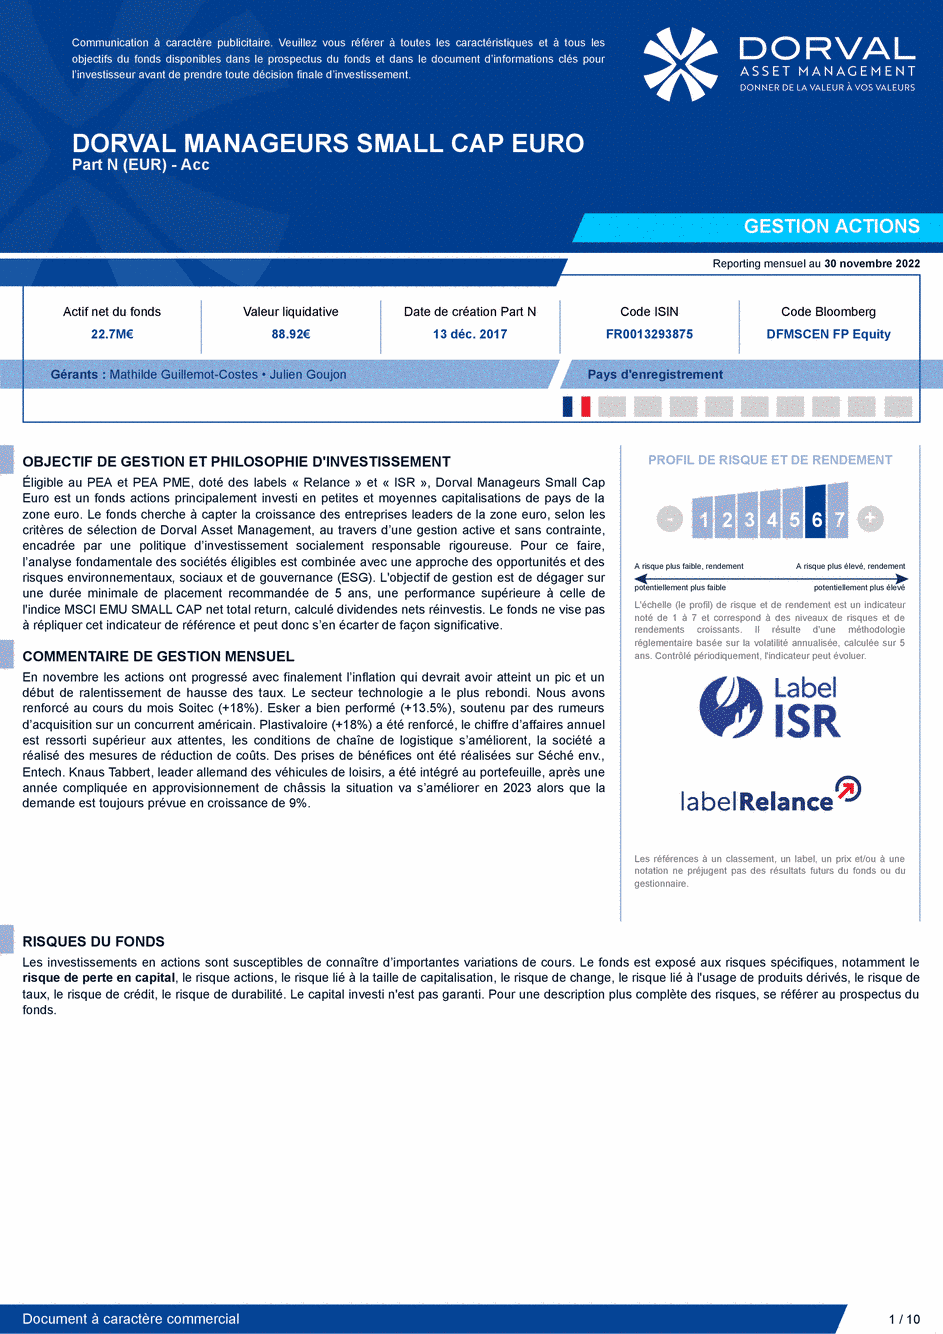 Reporting DORVAL MANAGEURS SMALL CAP EURO N - 30/11/2022 - Français